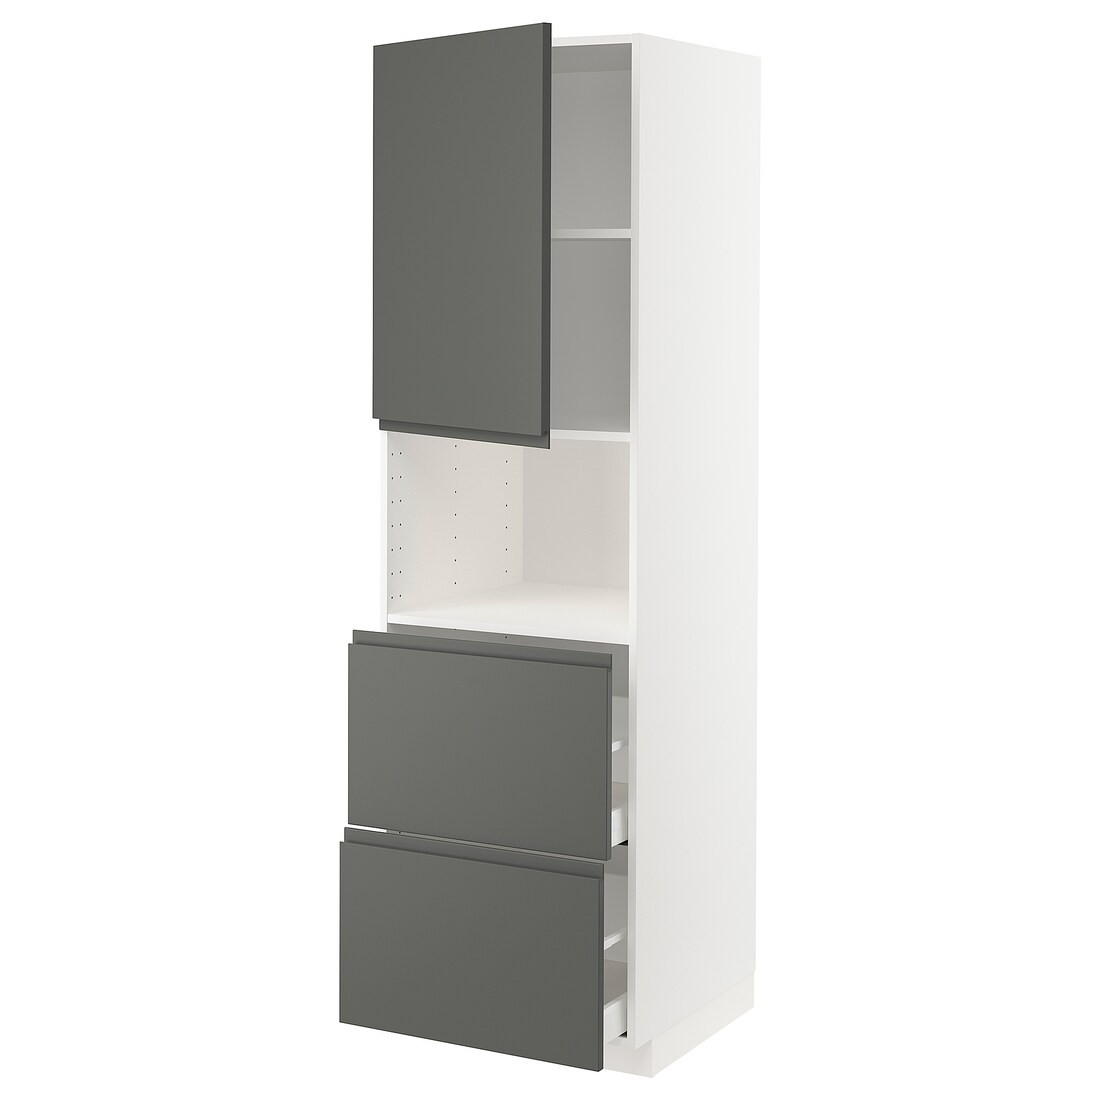 METOD МЕТОД / MAXIMERA МАКСИМЕРА Высокий шкаф для микроволновки с дверями / 2 ящика, белый / Voxtorp темно-серый, 60x60x200 см